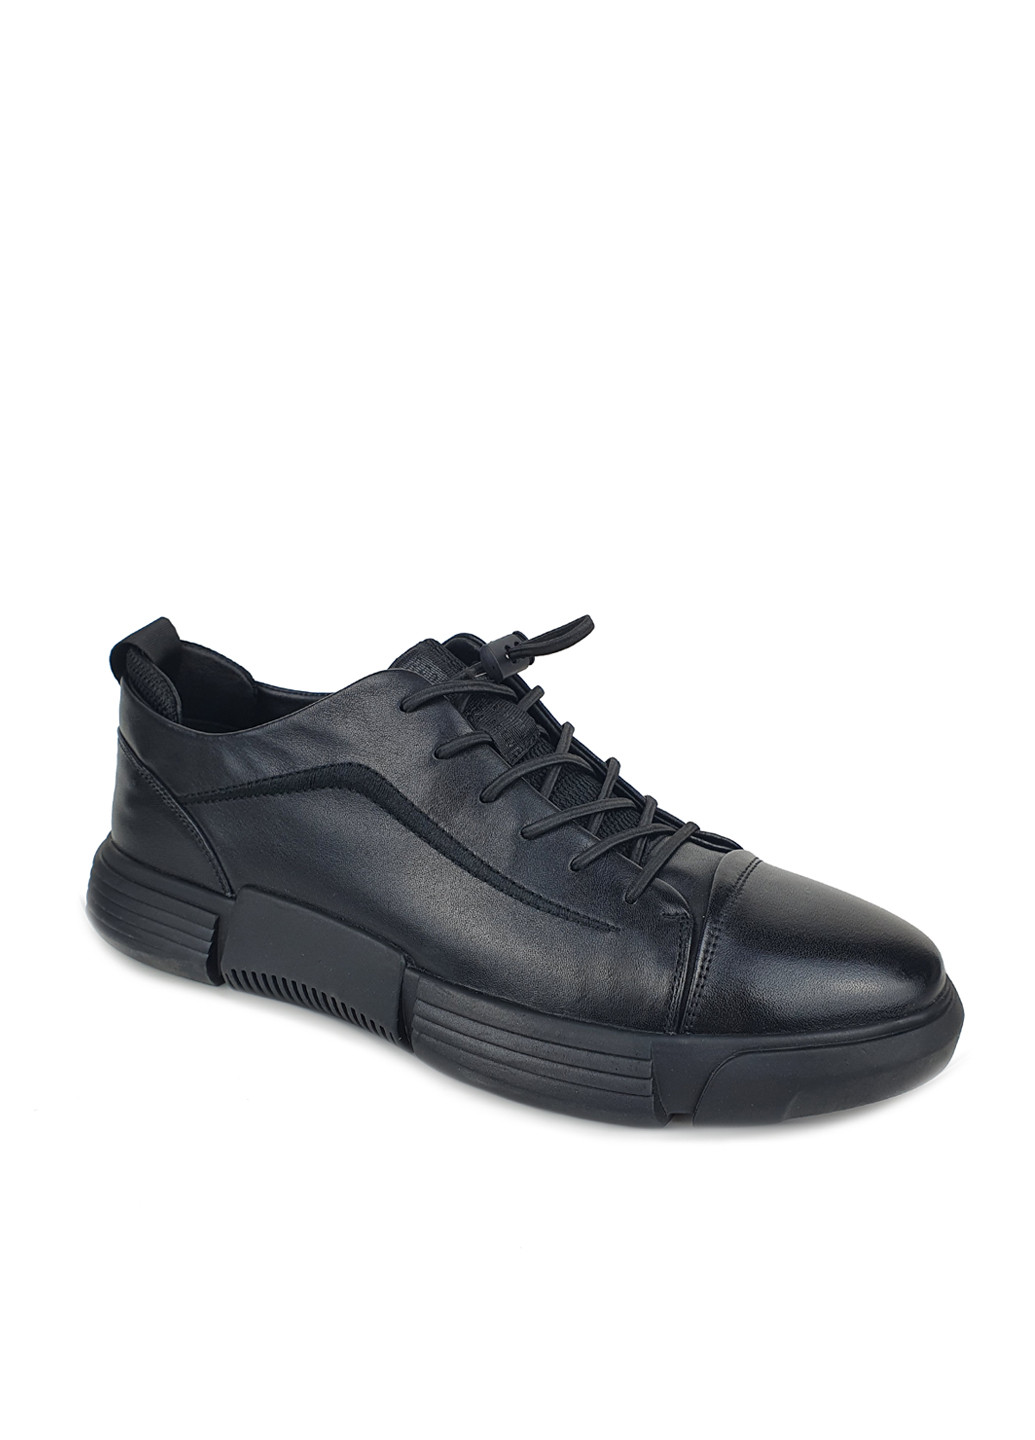 Чоловічі туфлі з натуральної шкіри чорні на гумці-шнурівці Cosottinni туфли (252453300)